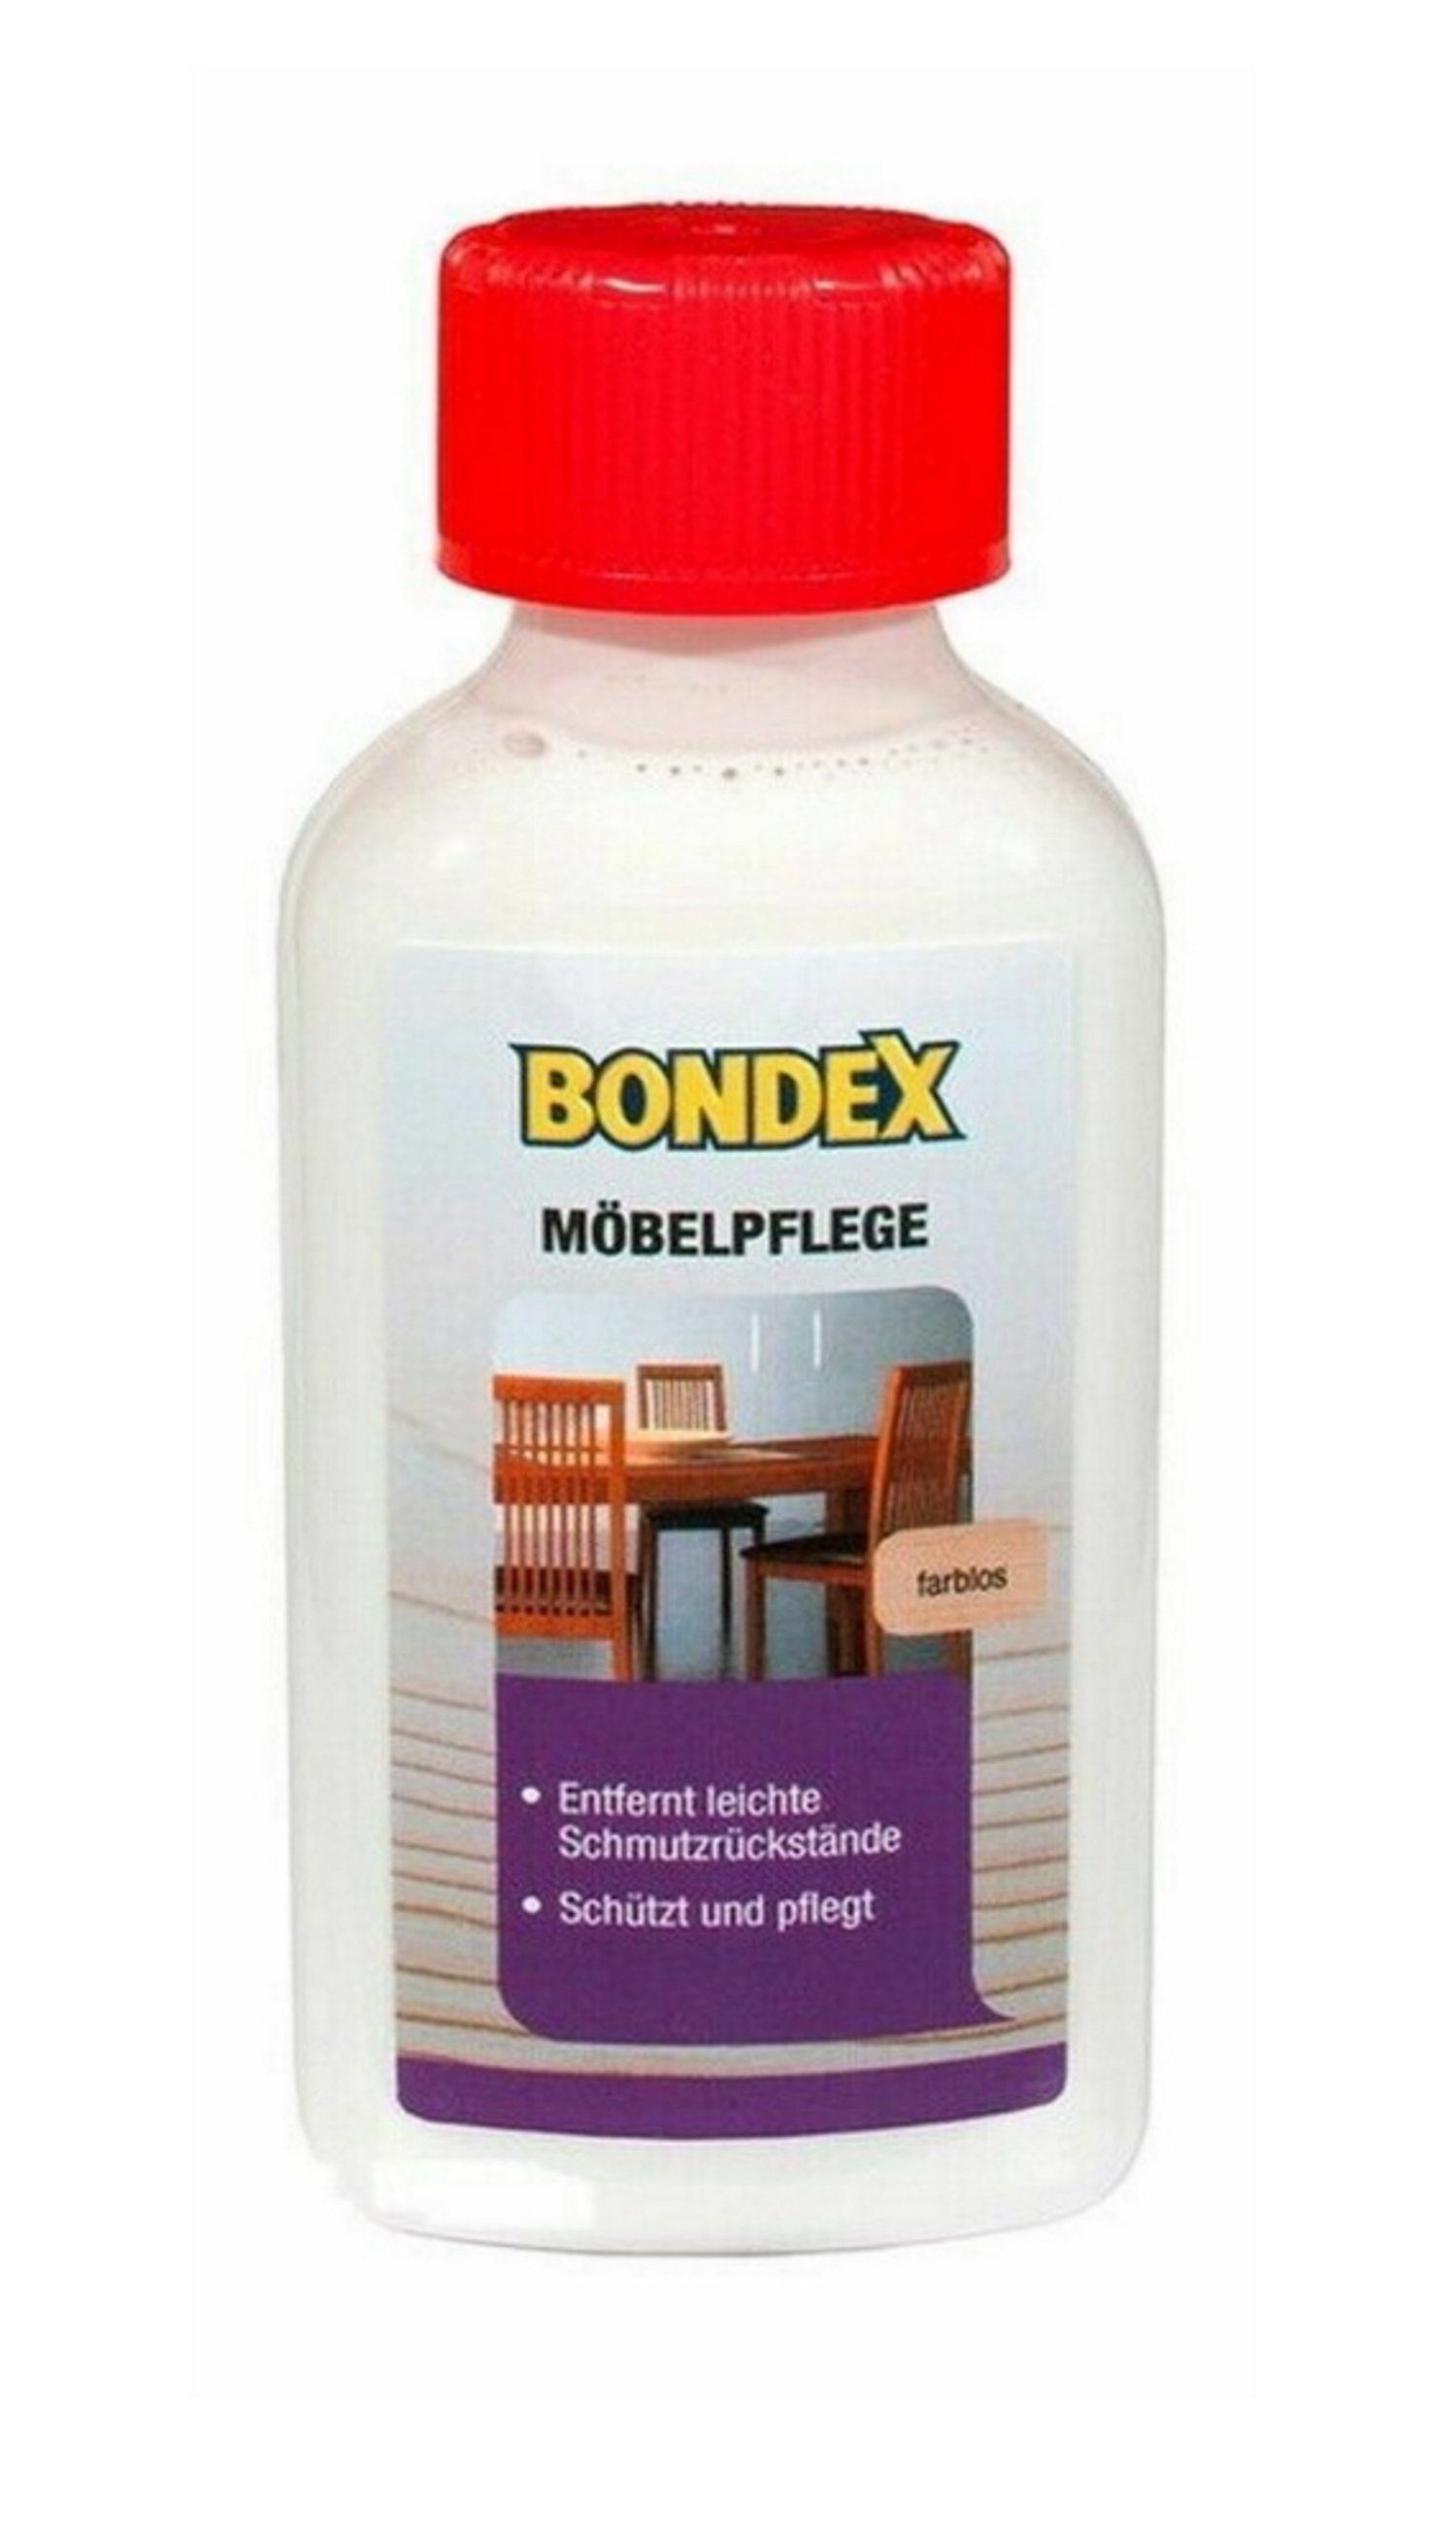 Bondex Holzöl Möbelpflege Farblos 150 ml Reinigung und Pflege von Holz Innen, beseitigt Verschmutzungen, beseitigt leichte Kratzer, frischt auf